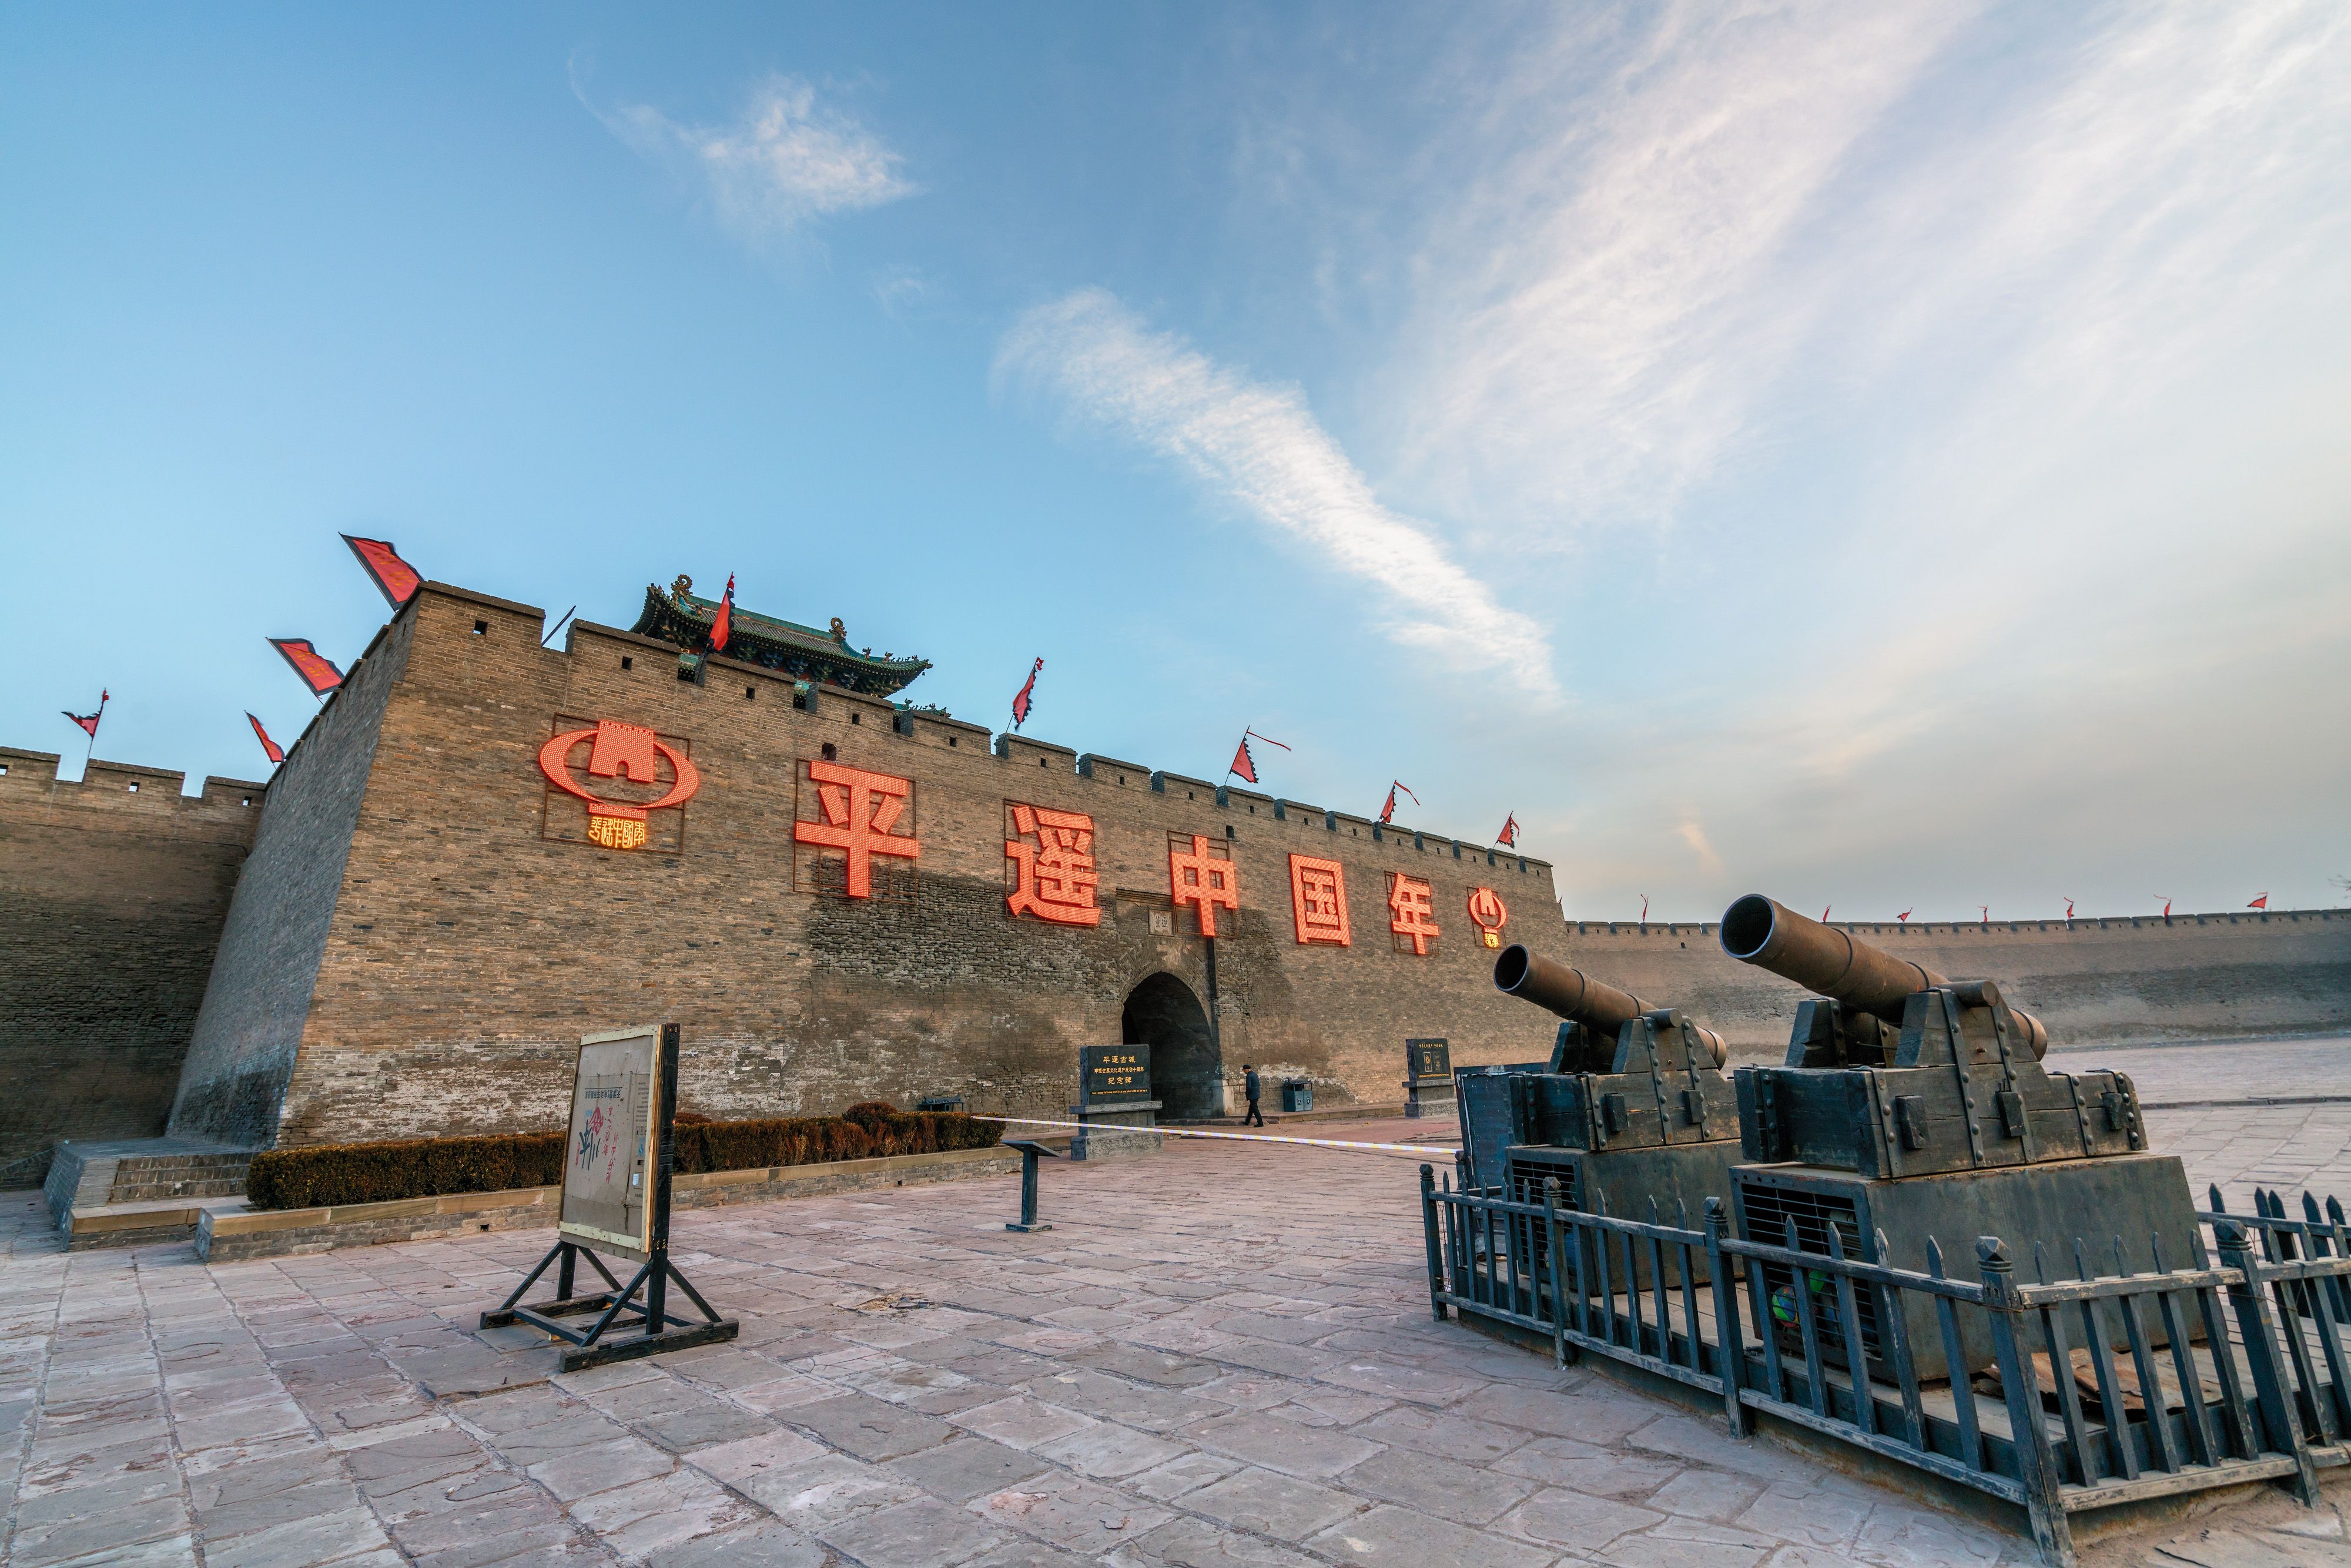 中国古城旅游景点排名图片